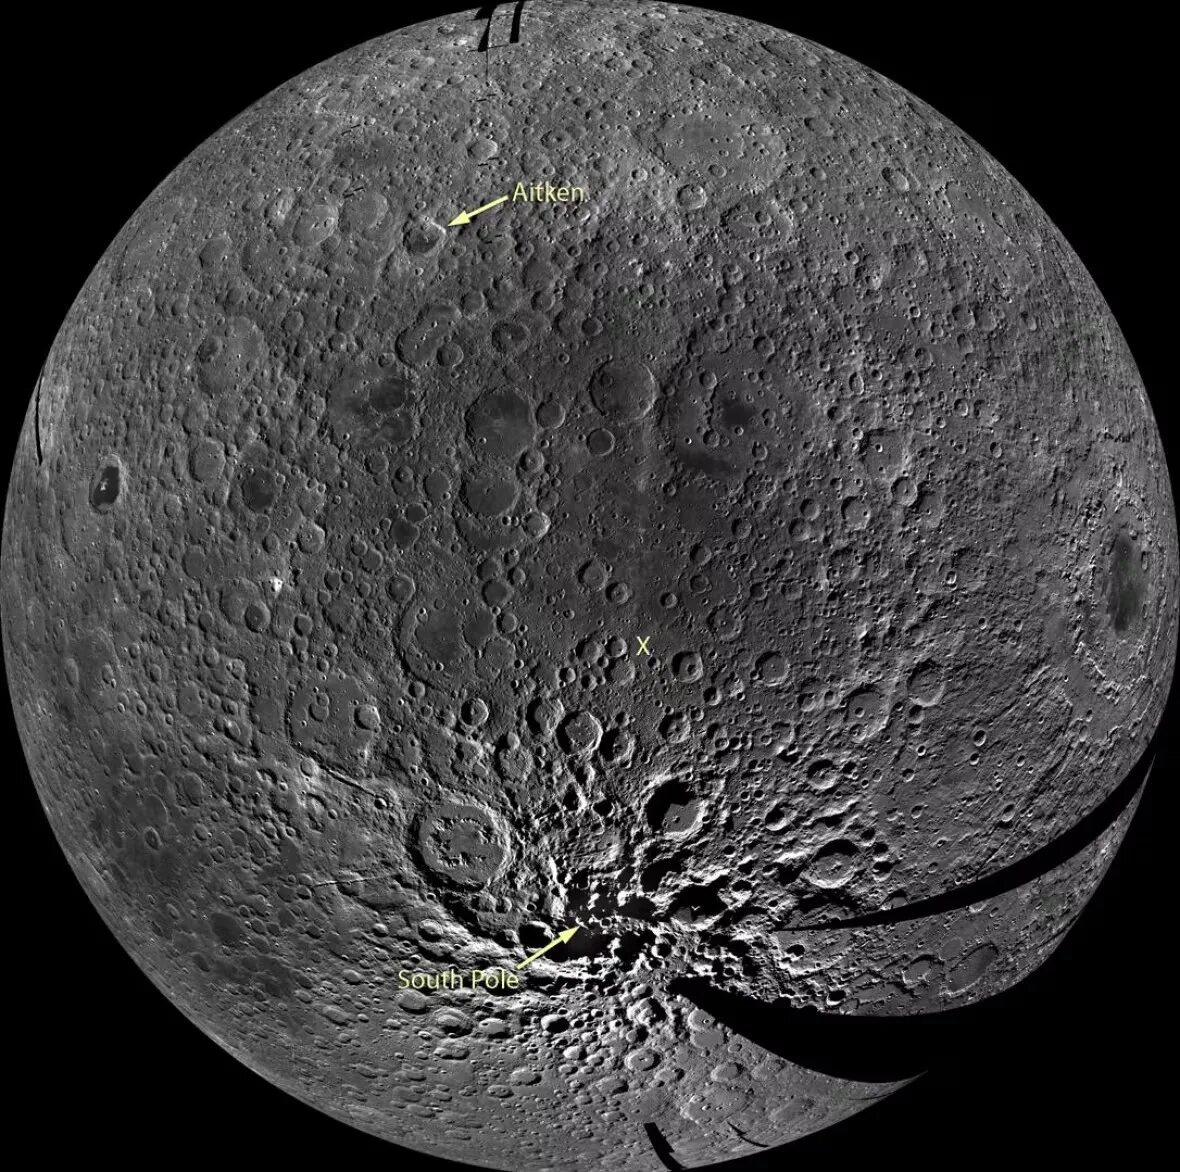 Lunar ru. Кратер Эйткен. Эйткен кратер на Луне. Южный полюс Эйткен. Бассейн Южный полюс Эйткен на Луне.